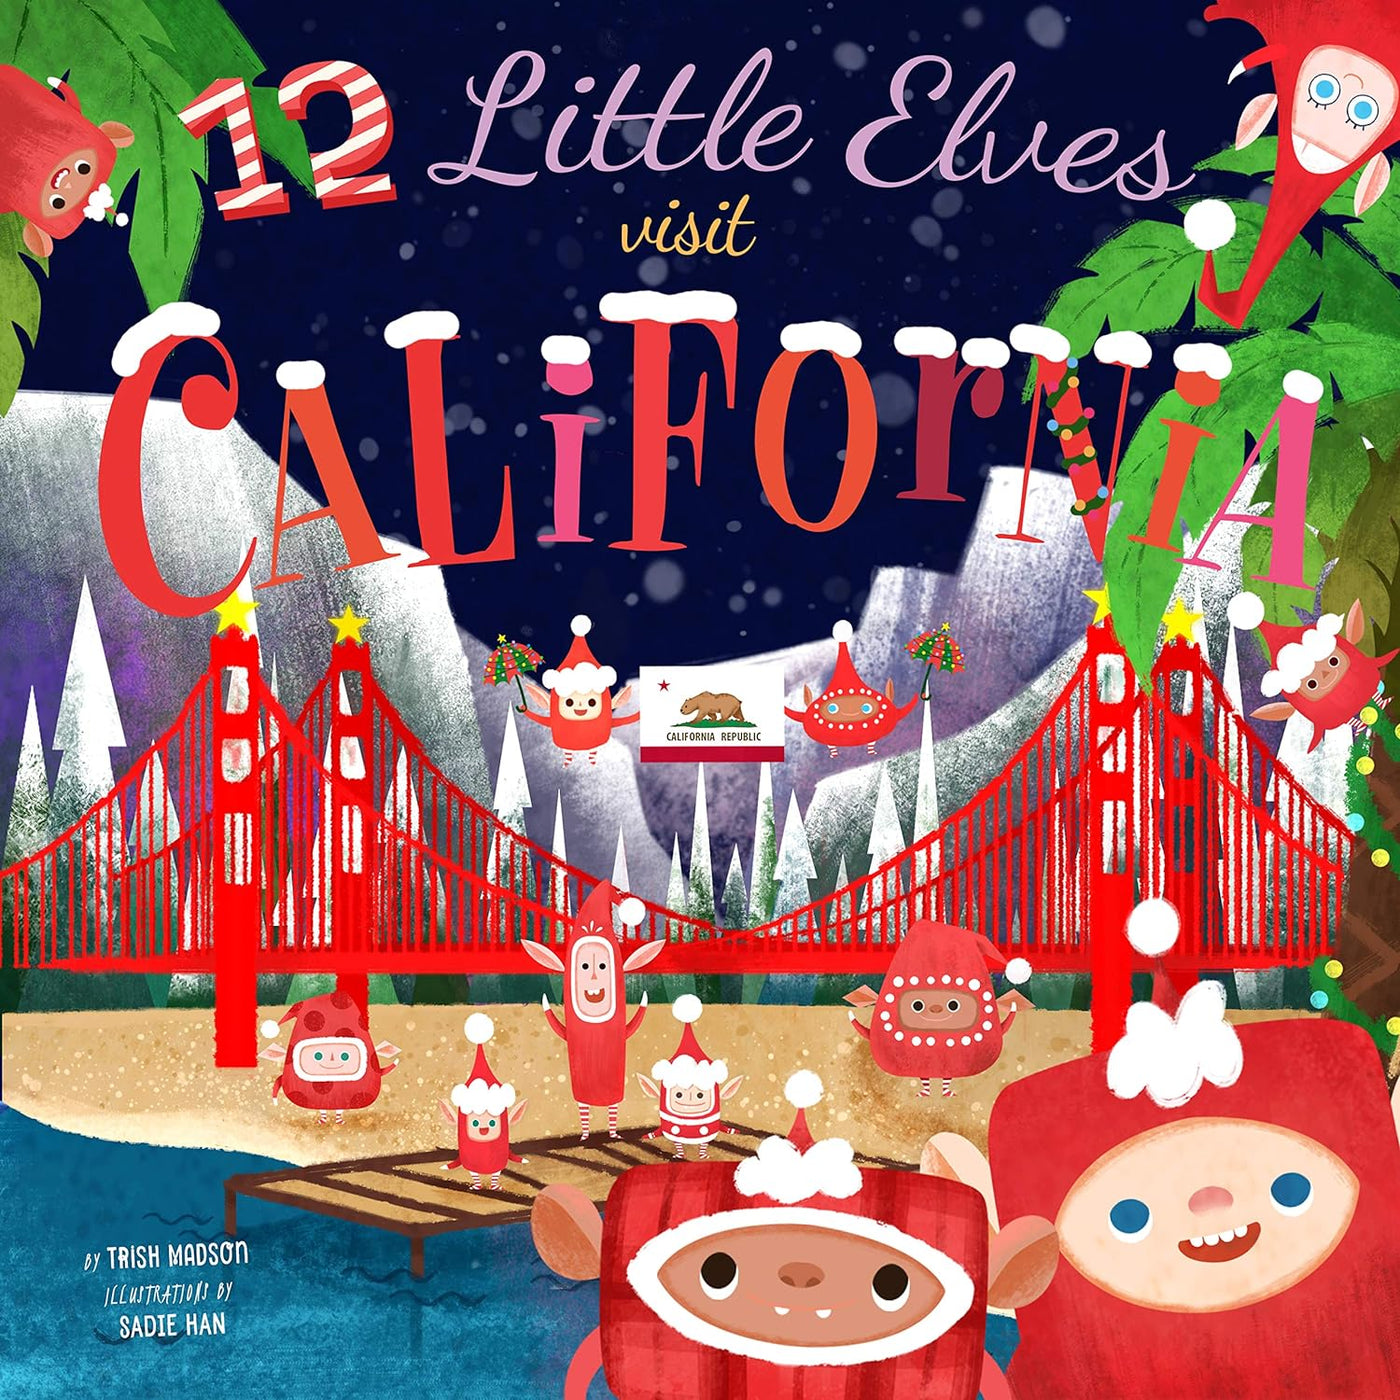 12 Little Elves Visit California